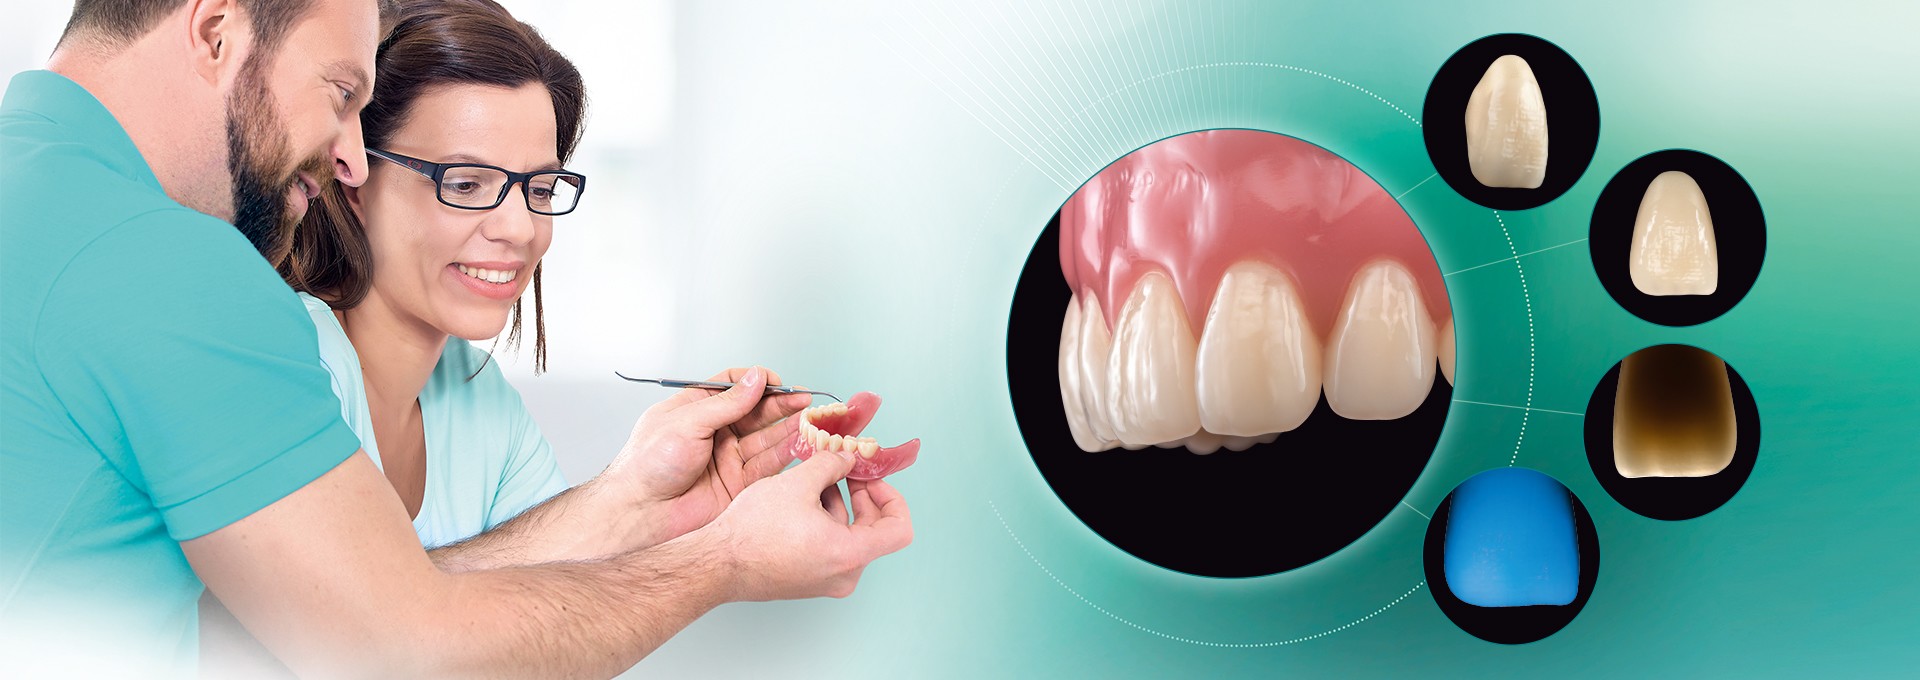 Deux prothésistes dentaires examinent une prothèse numérique. Illustrations de la dent artificielle VITA VIONIC VIGO.